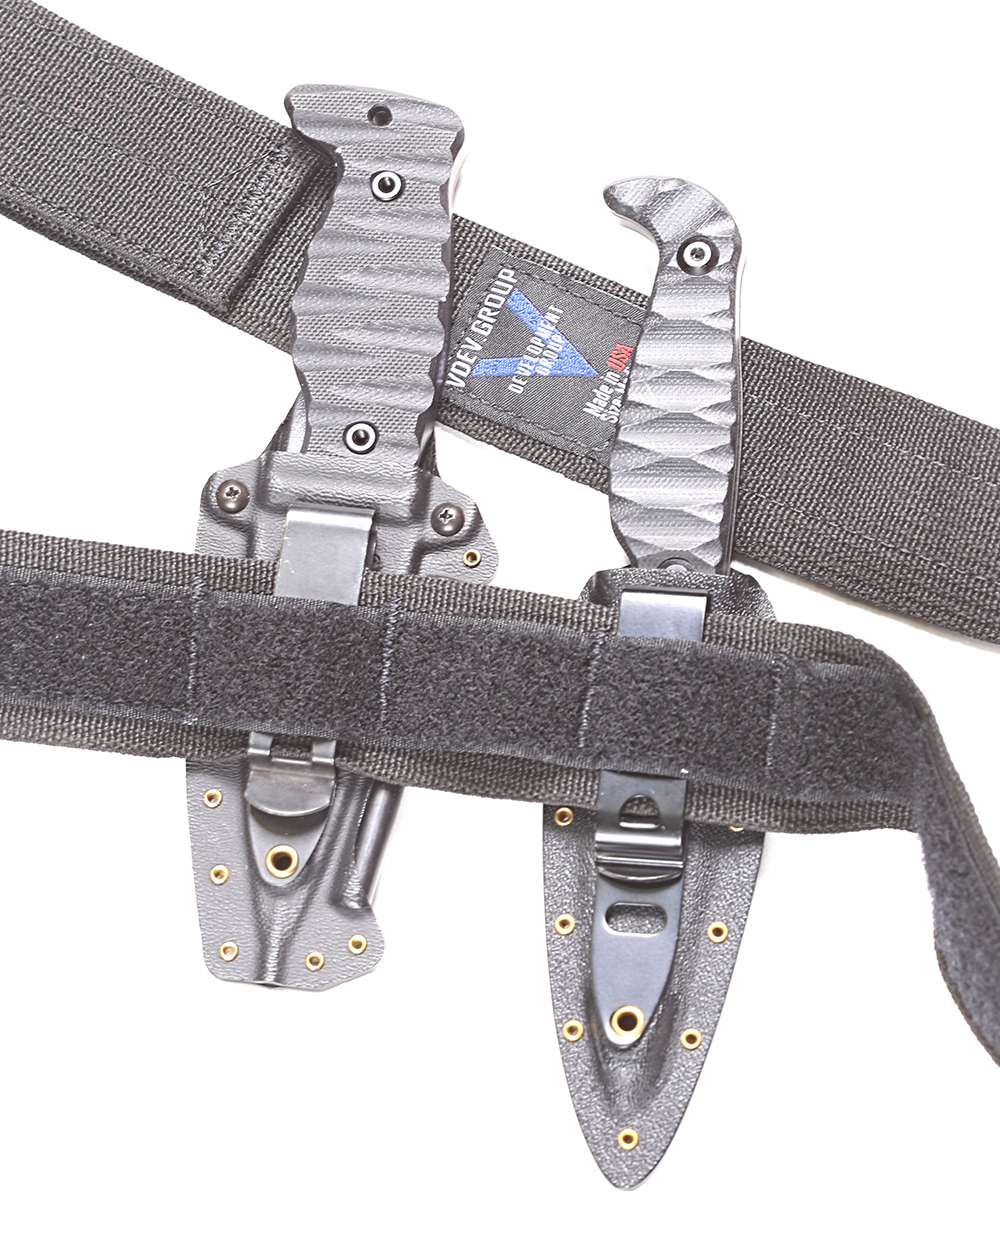 Megingjörð PRO - AIWB Specific - Conceal Carry Belt - V Development Group